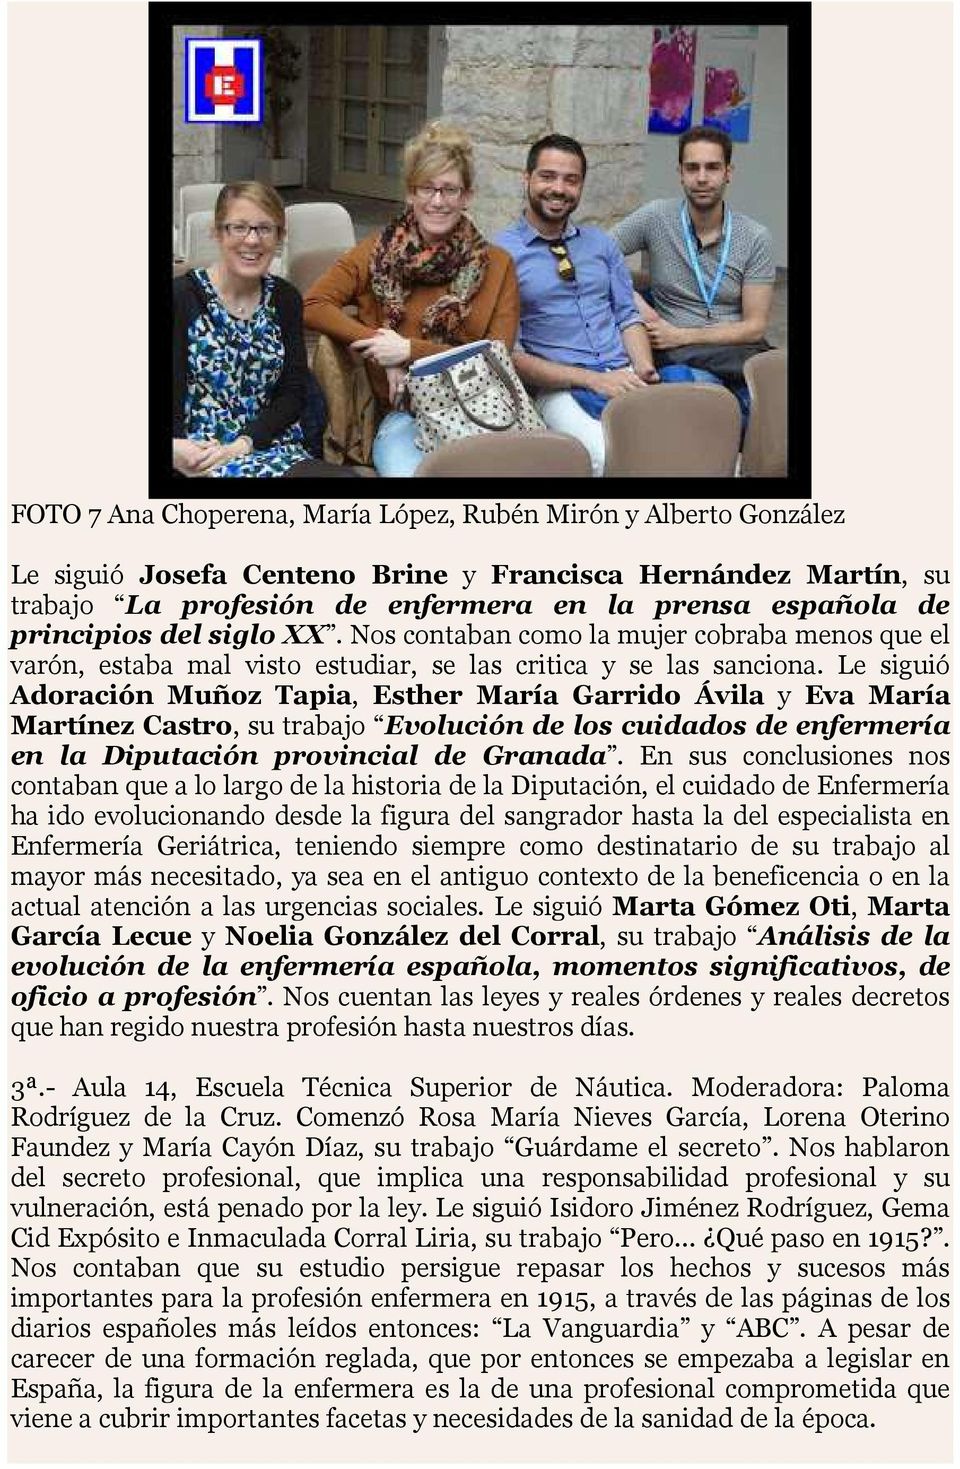 Le siguió Adoración Muñoz Tapia, Esther María Garrido Ávila y Eva María Martínez Castro, su trabajo Evolución de los cuidados de enfermería en la Diputación provincial de Granada.